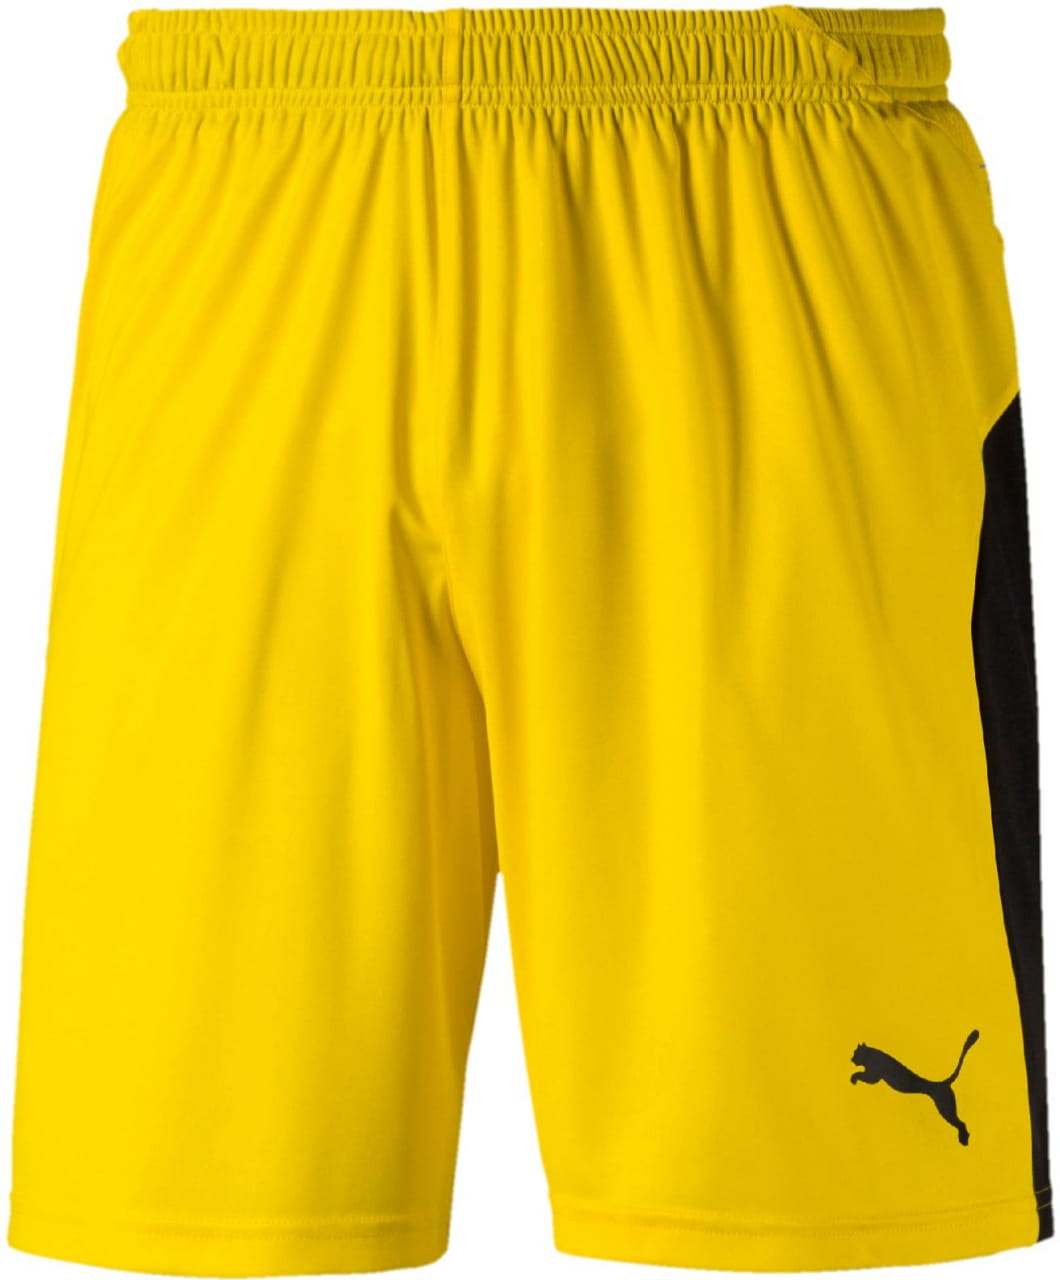 Pánske futbalové kraťasy Puma LIGA Shorts